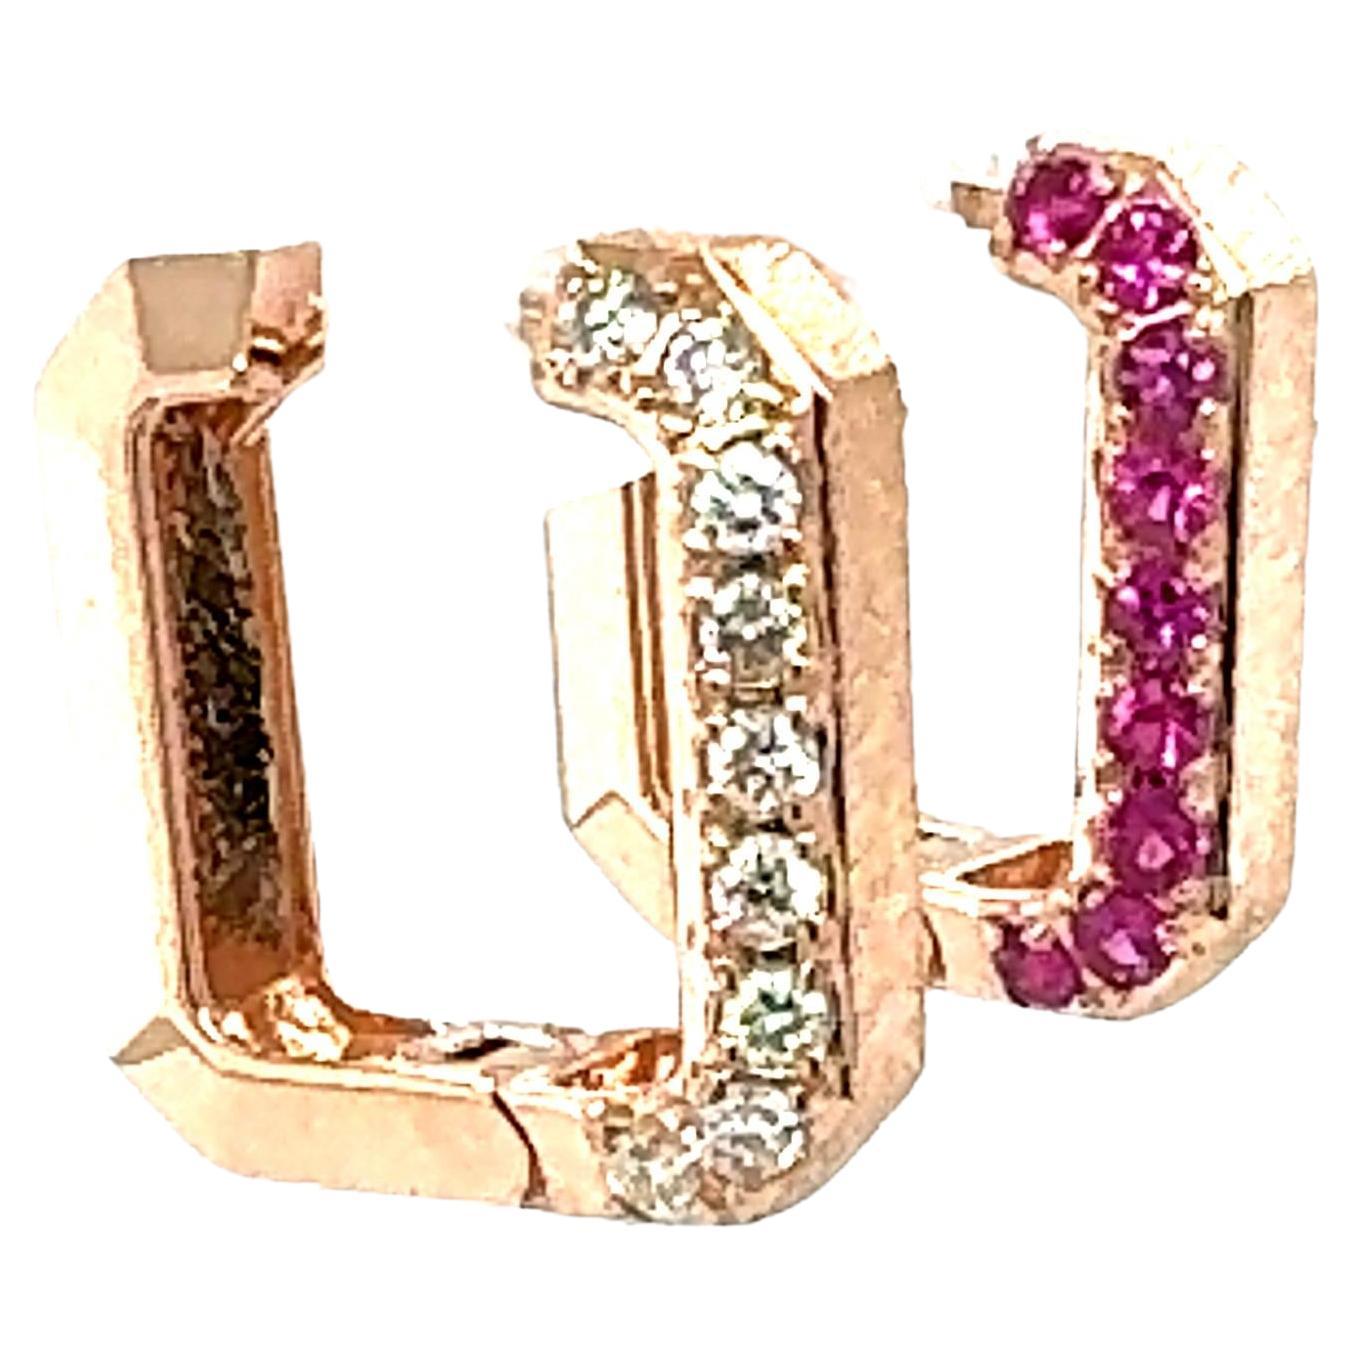 Wunderschöne und stilvolle Ohrringe mit Diamanten und rosa Saphiren aus Roségold

Besonderheiten des Artikels:

18 natürliche weiße Diamanten im Rundschliff mit einem Gewicht von etwa 0,48 Karat
Klarheit: SI1, Farbe: F
18 natürliche rosa Saphire im